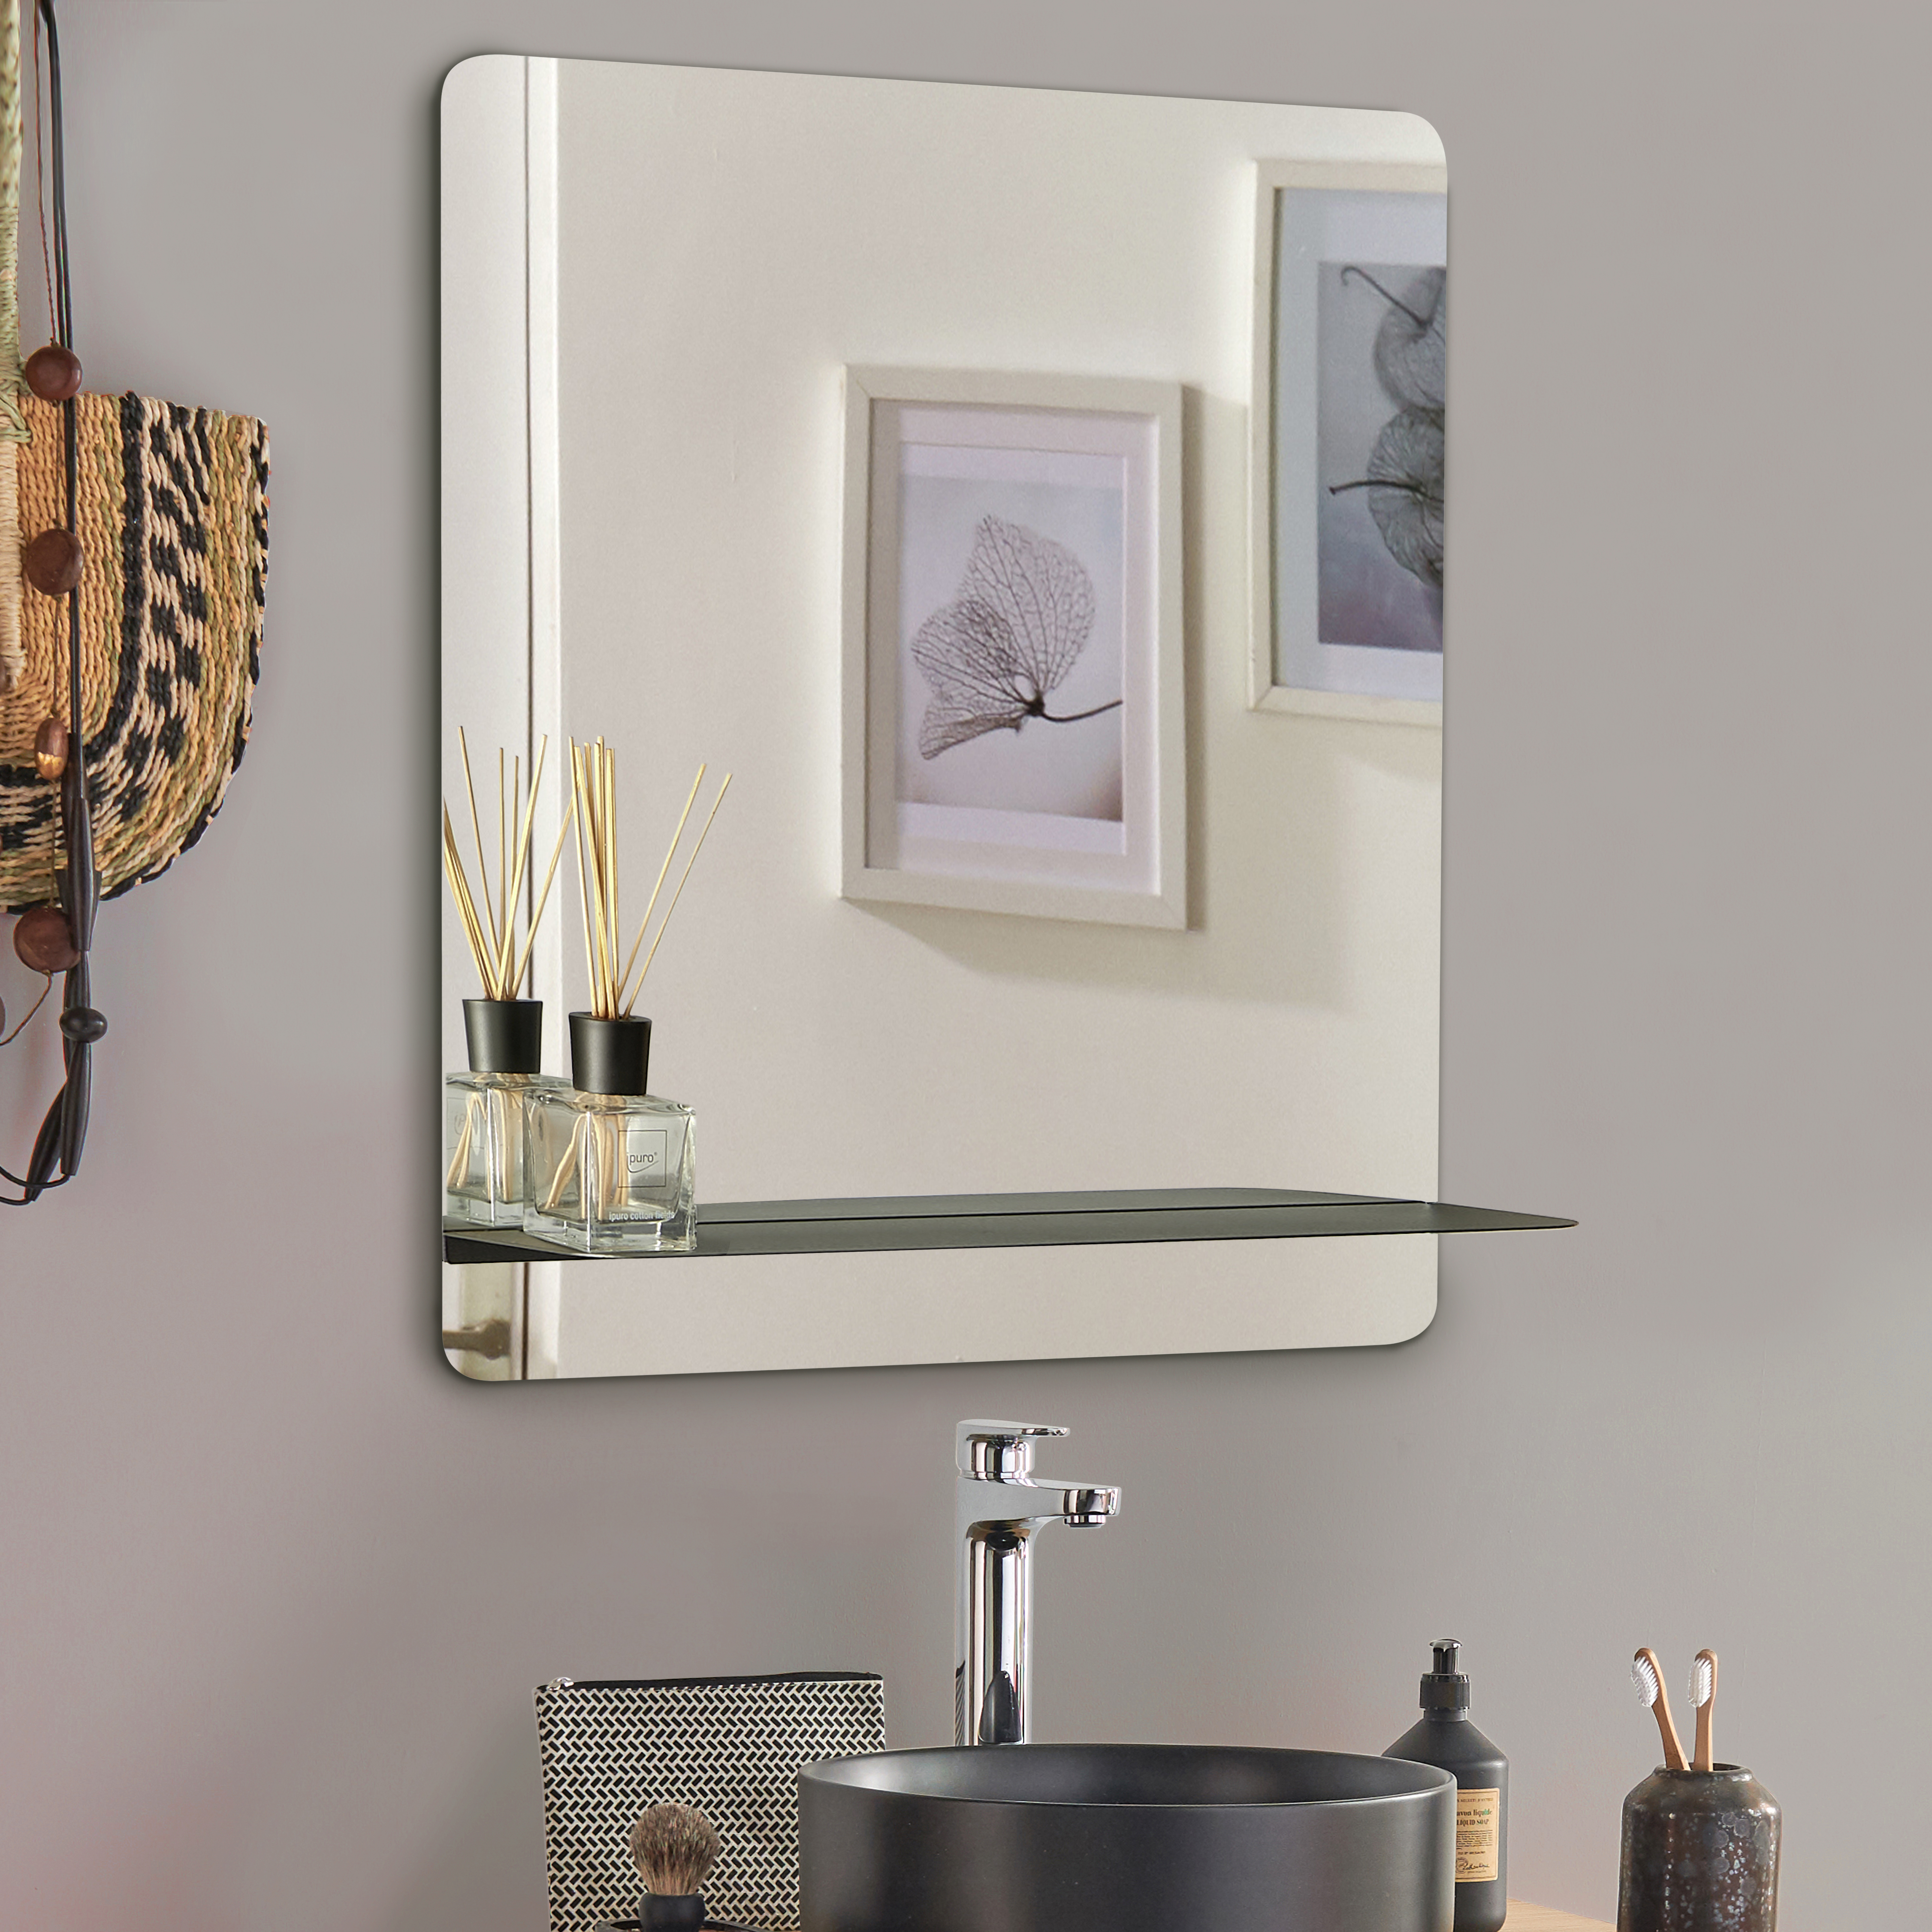 Le miroir de salle de bain avec tablette : comment faire le meilleur choix ?